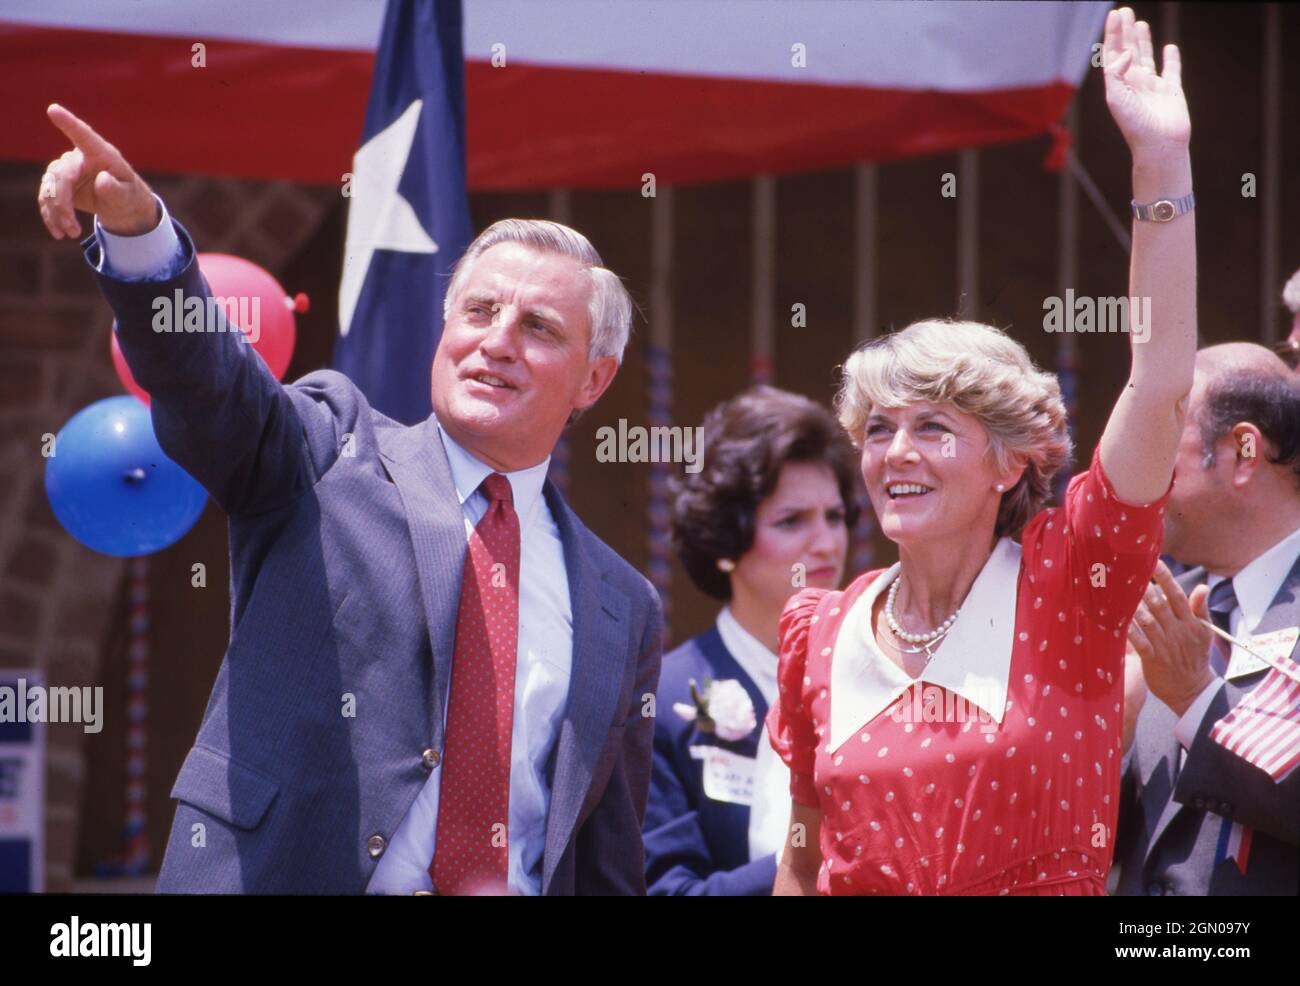 San Antonio Texas USA, 1984: Die demokratische Vizepräsidentialkandidatin Geraldine Ferraro winkt während einer Wahlkampfkundgebung auf dem Marktplatz zu den Unterstützern. Ferraro ist die erste Frau, die als Vizepräsidentin einer großen Partei in der amerikanischen Politik nominiert wurde. ©Bob Daemmrich Stockfoto